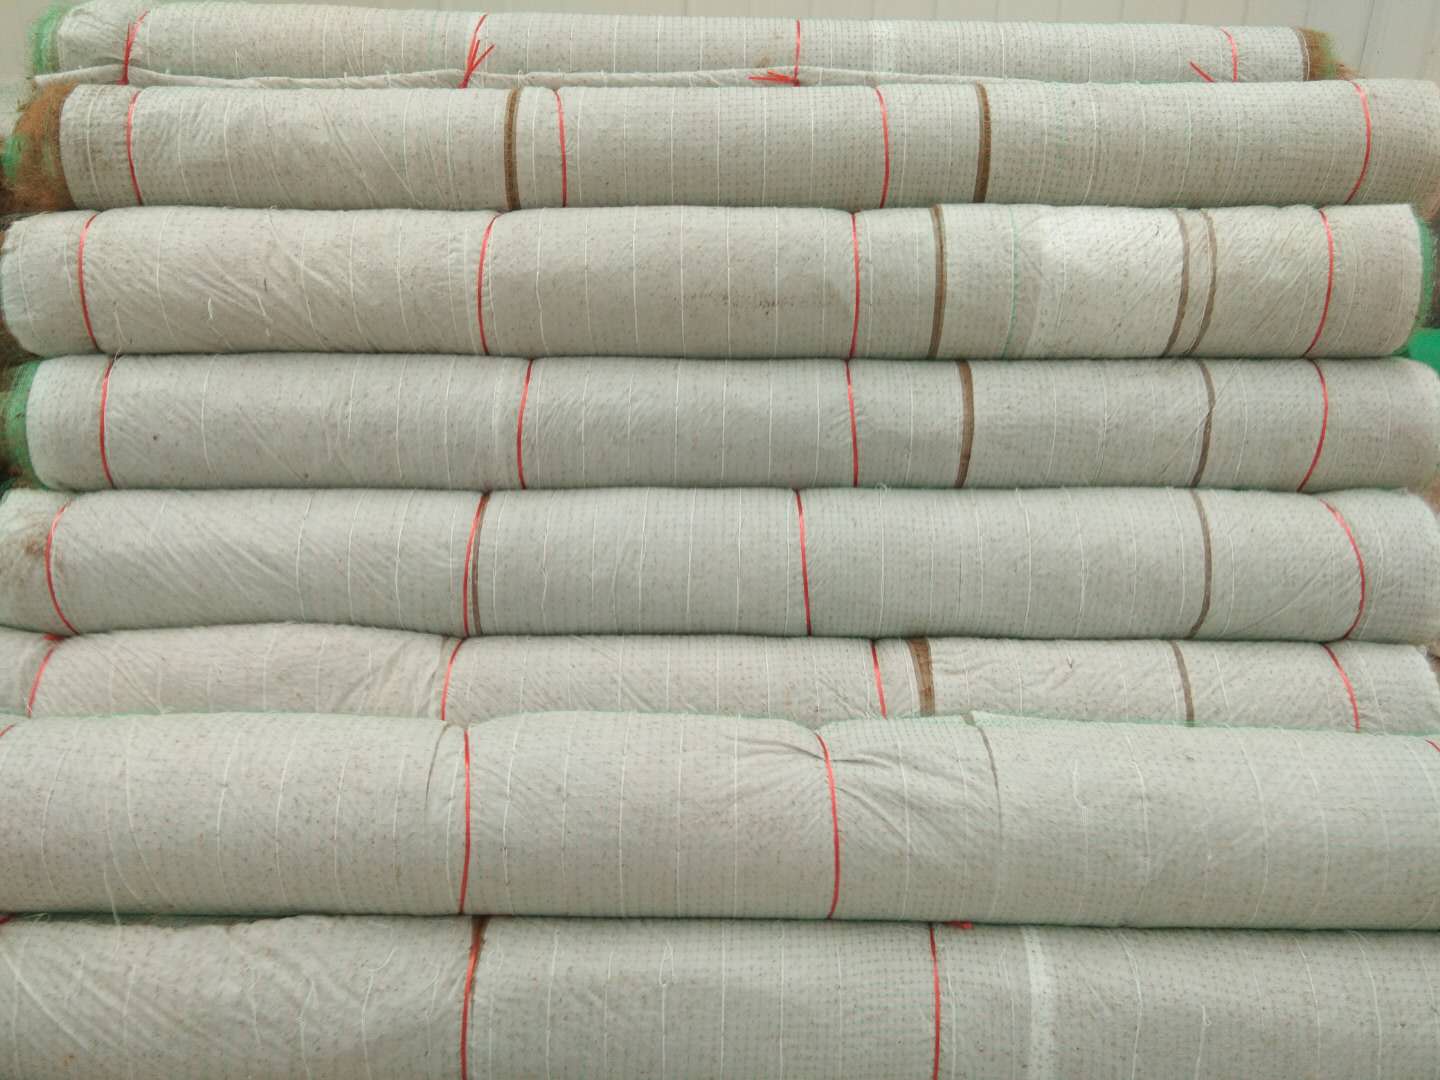 环保草毯-山东环保草毯生产厂家-优质环保草毯供应商-山东环保草毯品牌-山东优质环保草毯厂家报价